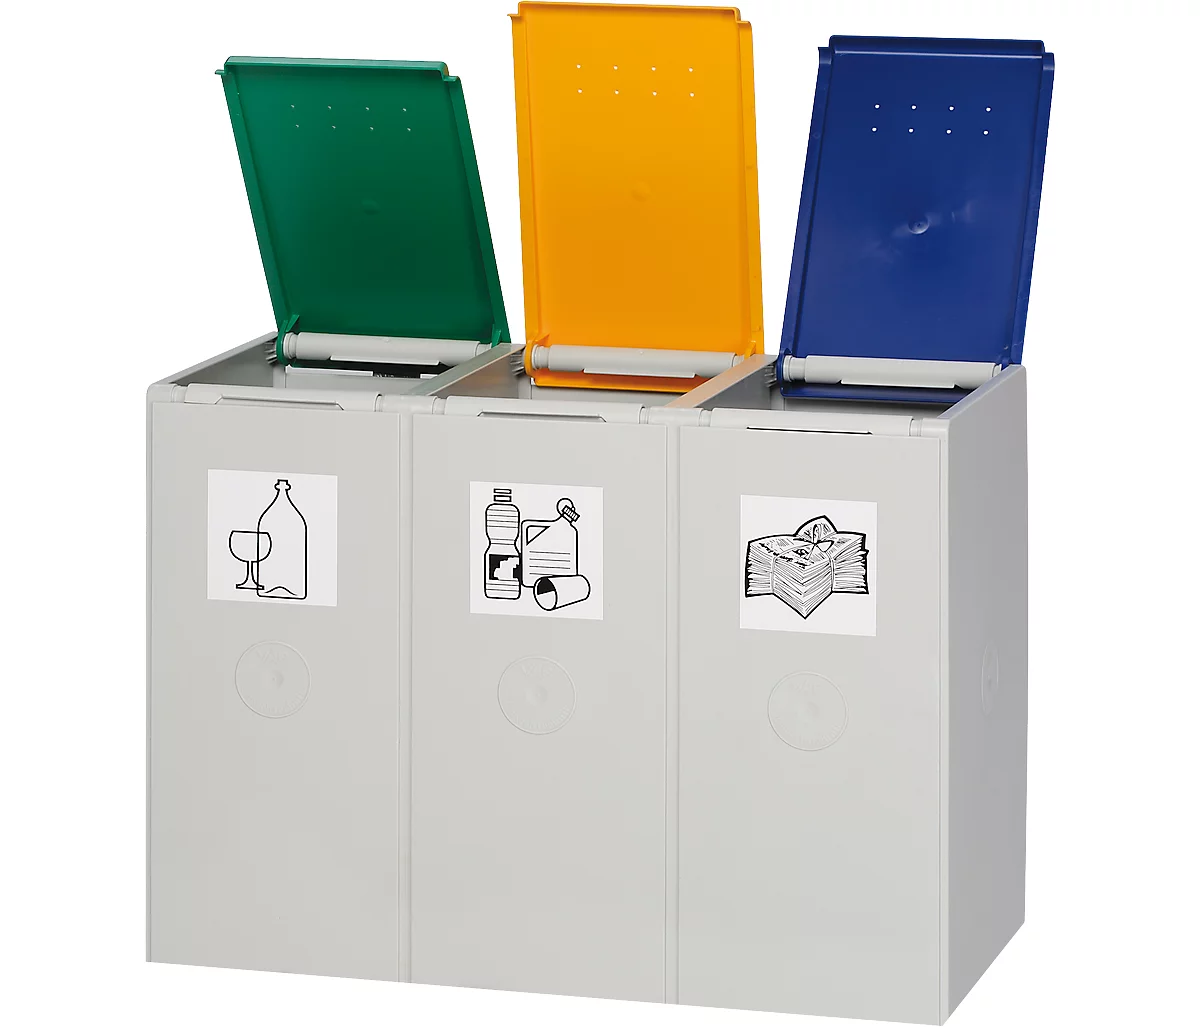 Sistema de recogida de residuos reciclables 2000, 40 litros, elemento triple, ¡se suministra sin tapa!